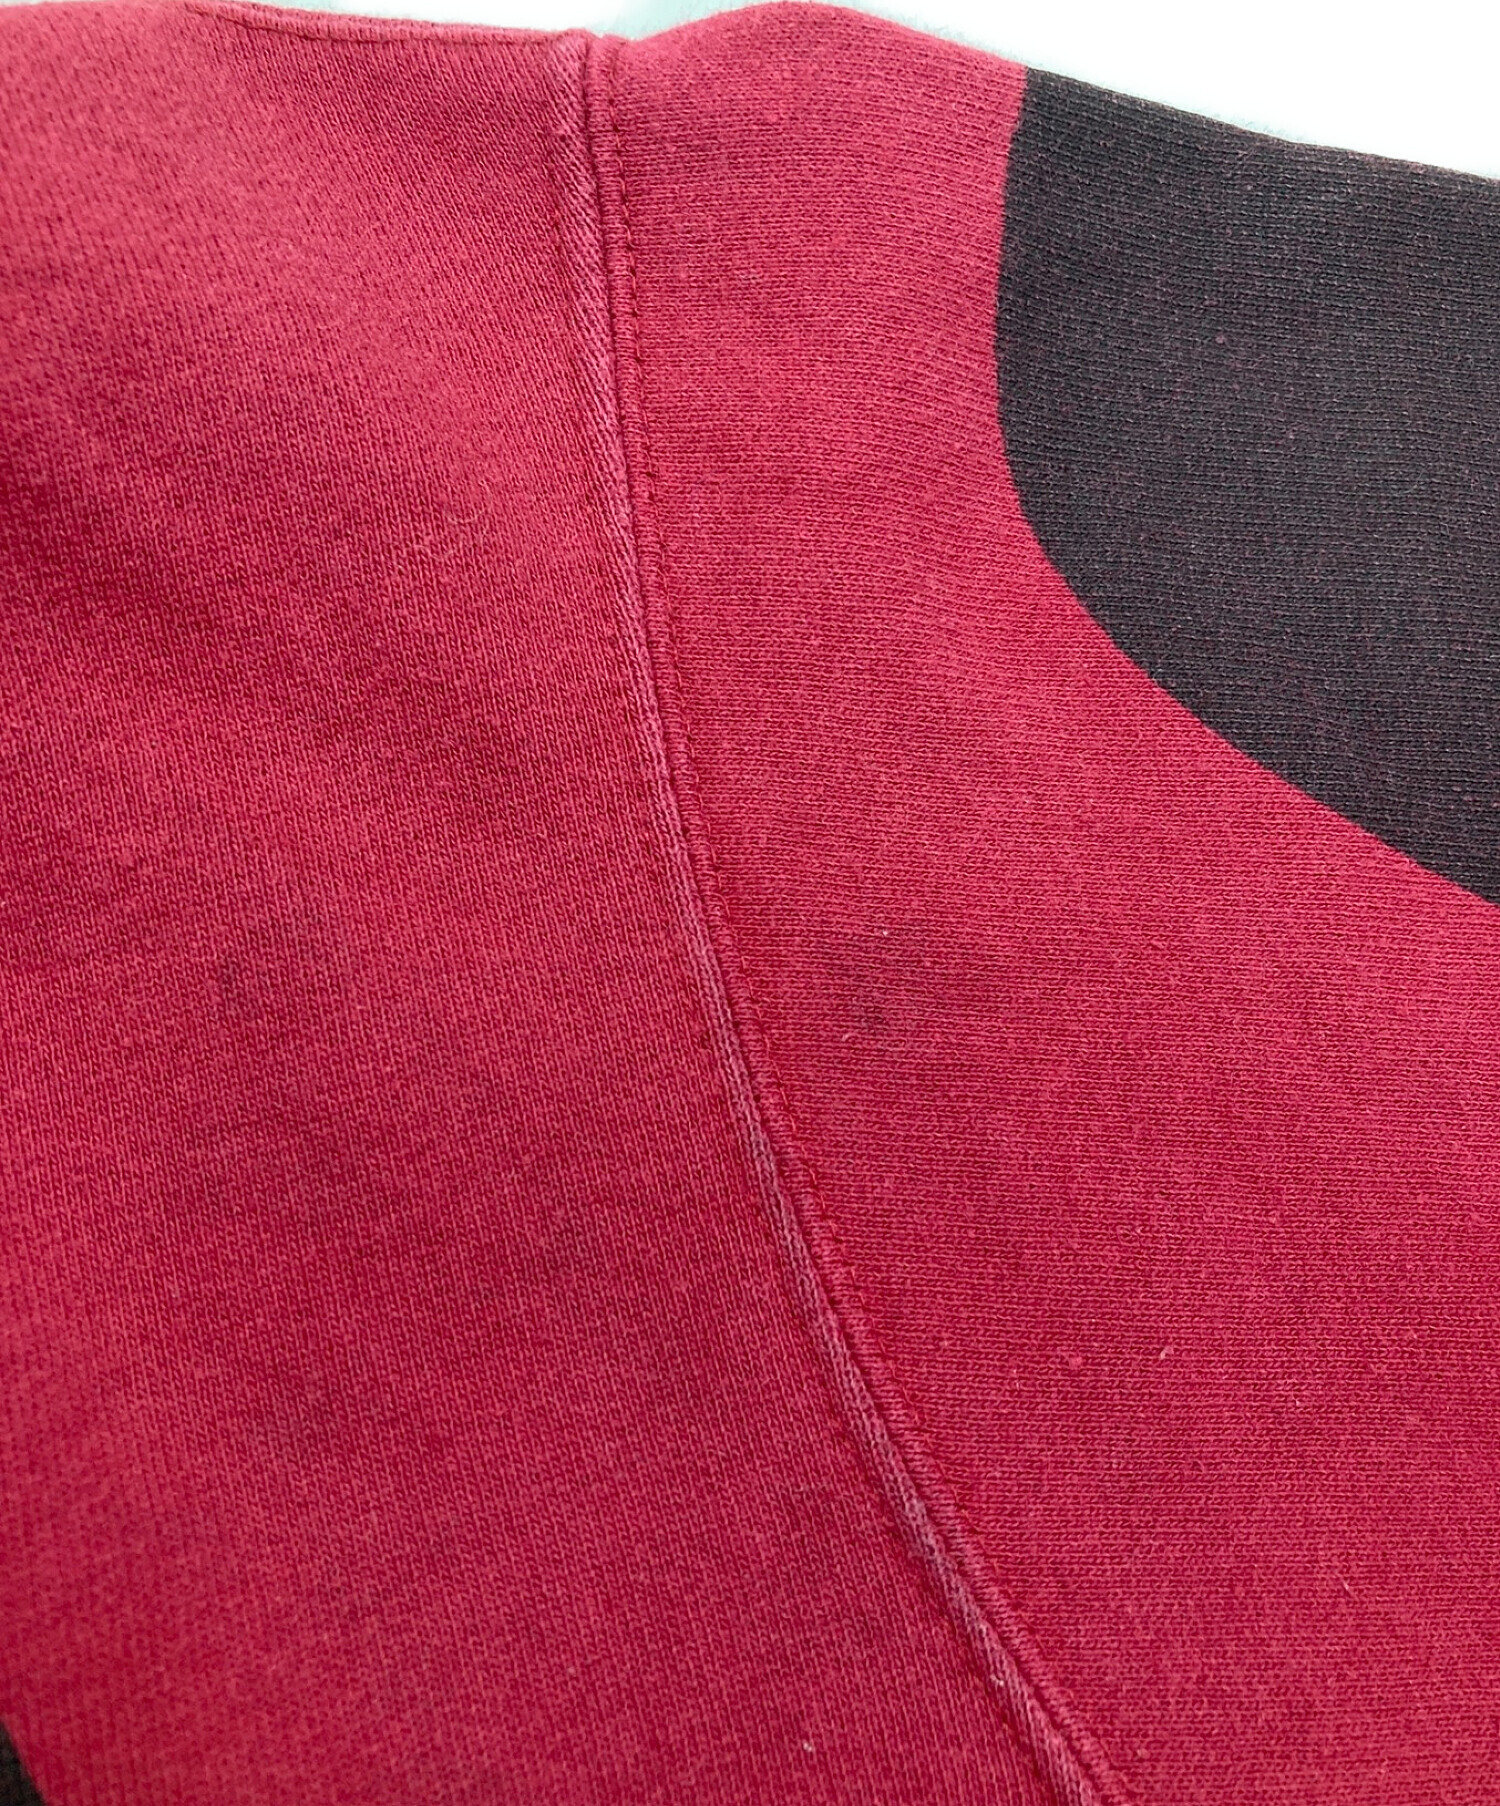 SUPREME (シュプリーム) Jean Paul GAULTIER (ジャンポールゴルチェ) Floral Print Hooded  Sweatshirt レッド×グリーン サイズ:M